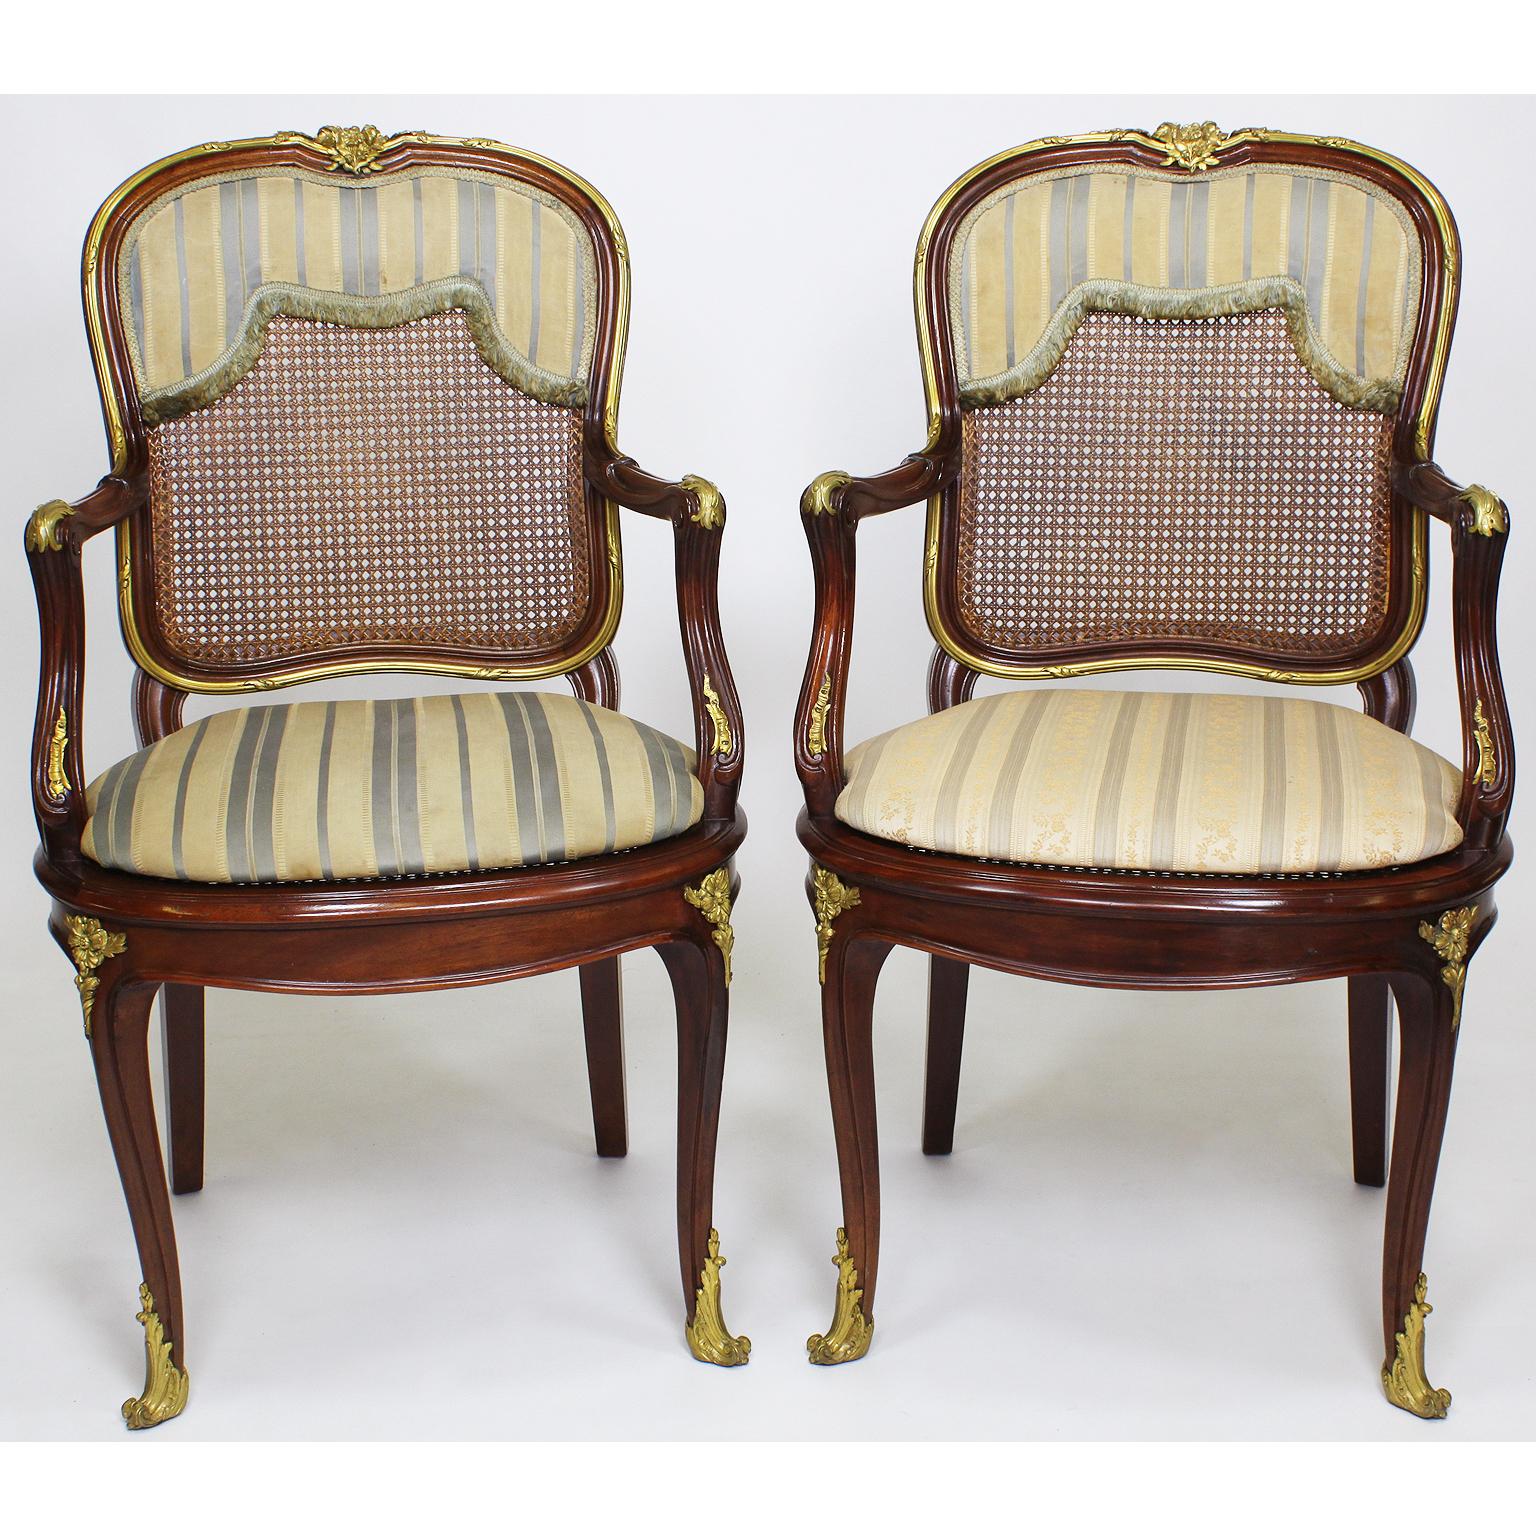 Eine feine Reihe von vierzehn, Französisch, 19-20. Jahrhundert Belle Époque Louis XV-Stil Mahagoni und Ormolu montiert Esszimmerstühle, bestehend aus zwölf Stühle und zwei Sessel, alle mit Rohrrücken und Sitze und gepolsterte flache Kissen, mit